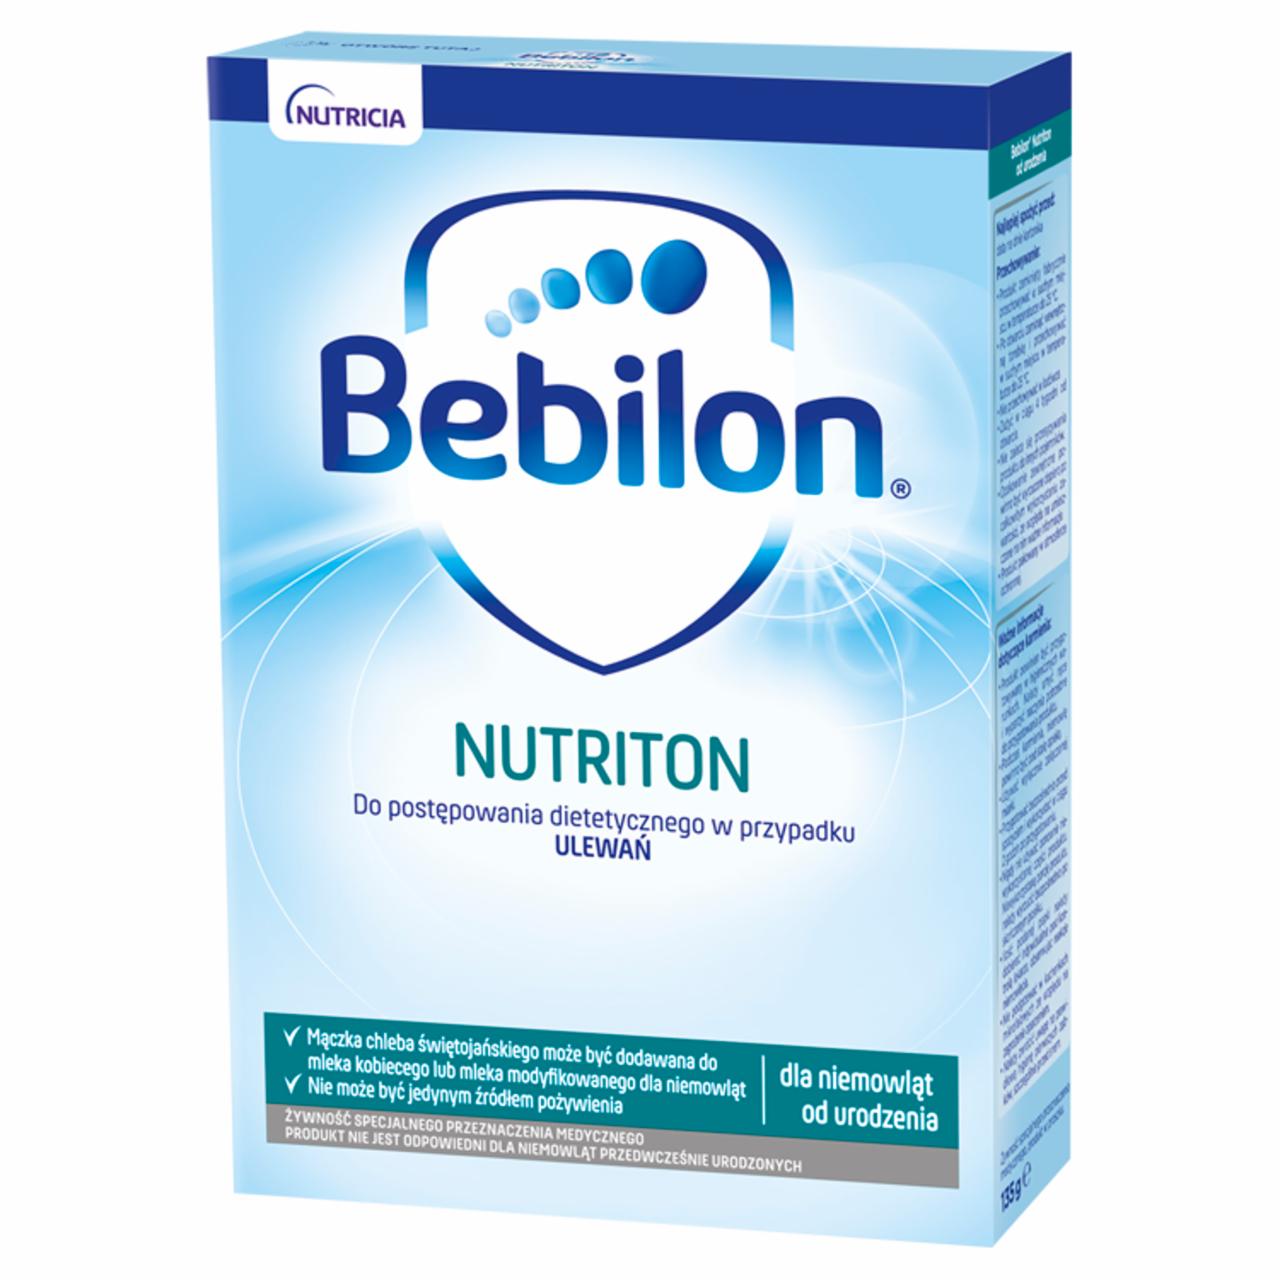 Zdjęcia - Bebilon Nutriton Żywność specjalnego przeznaczenia medycznego dla niemowląt od urodzenia 135 g